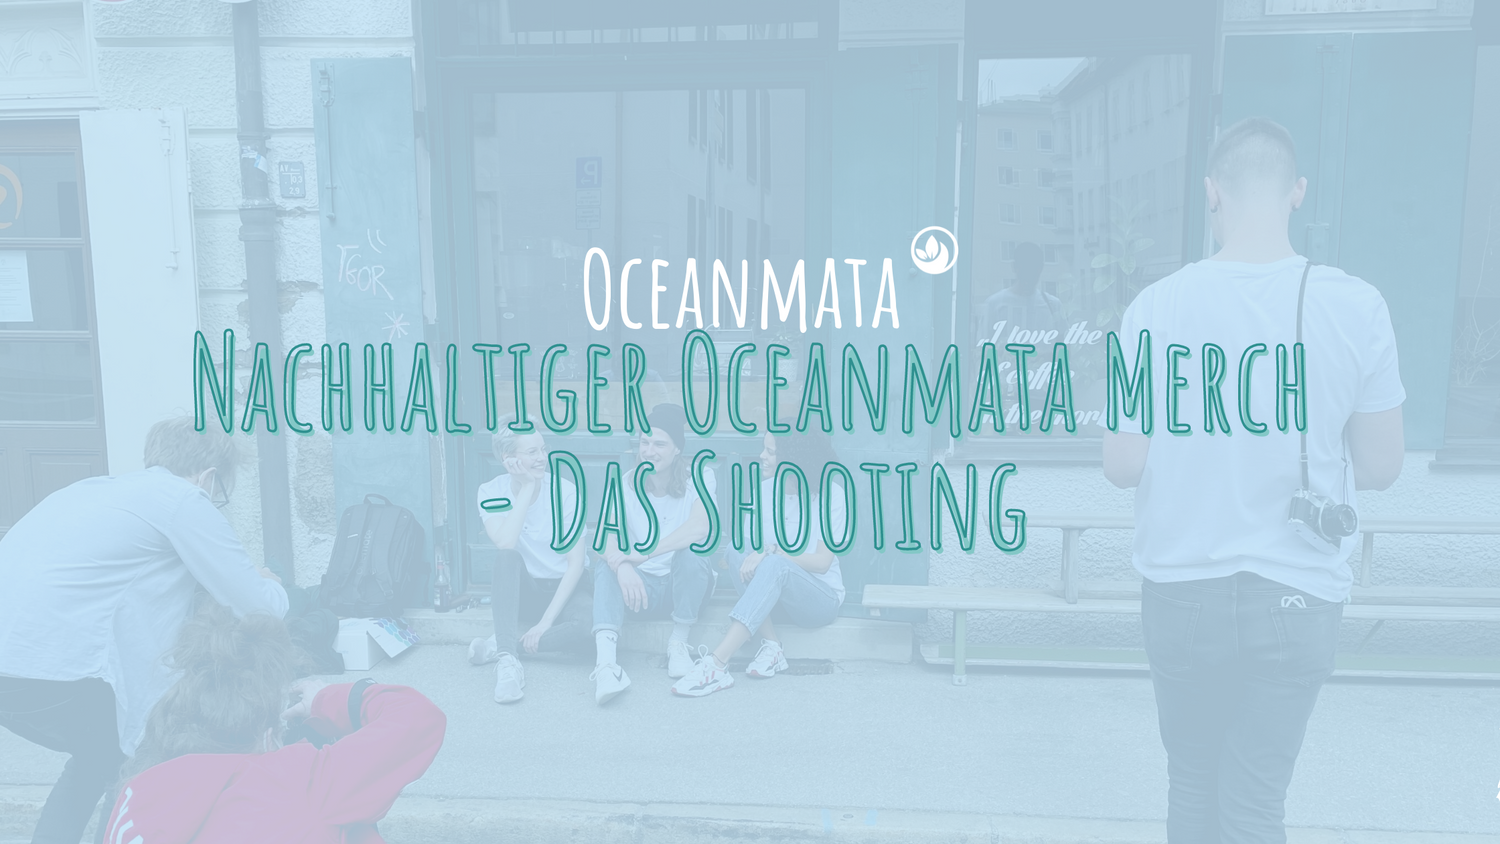 Nachhaltiger Oceanmata Merch - das Shooting